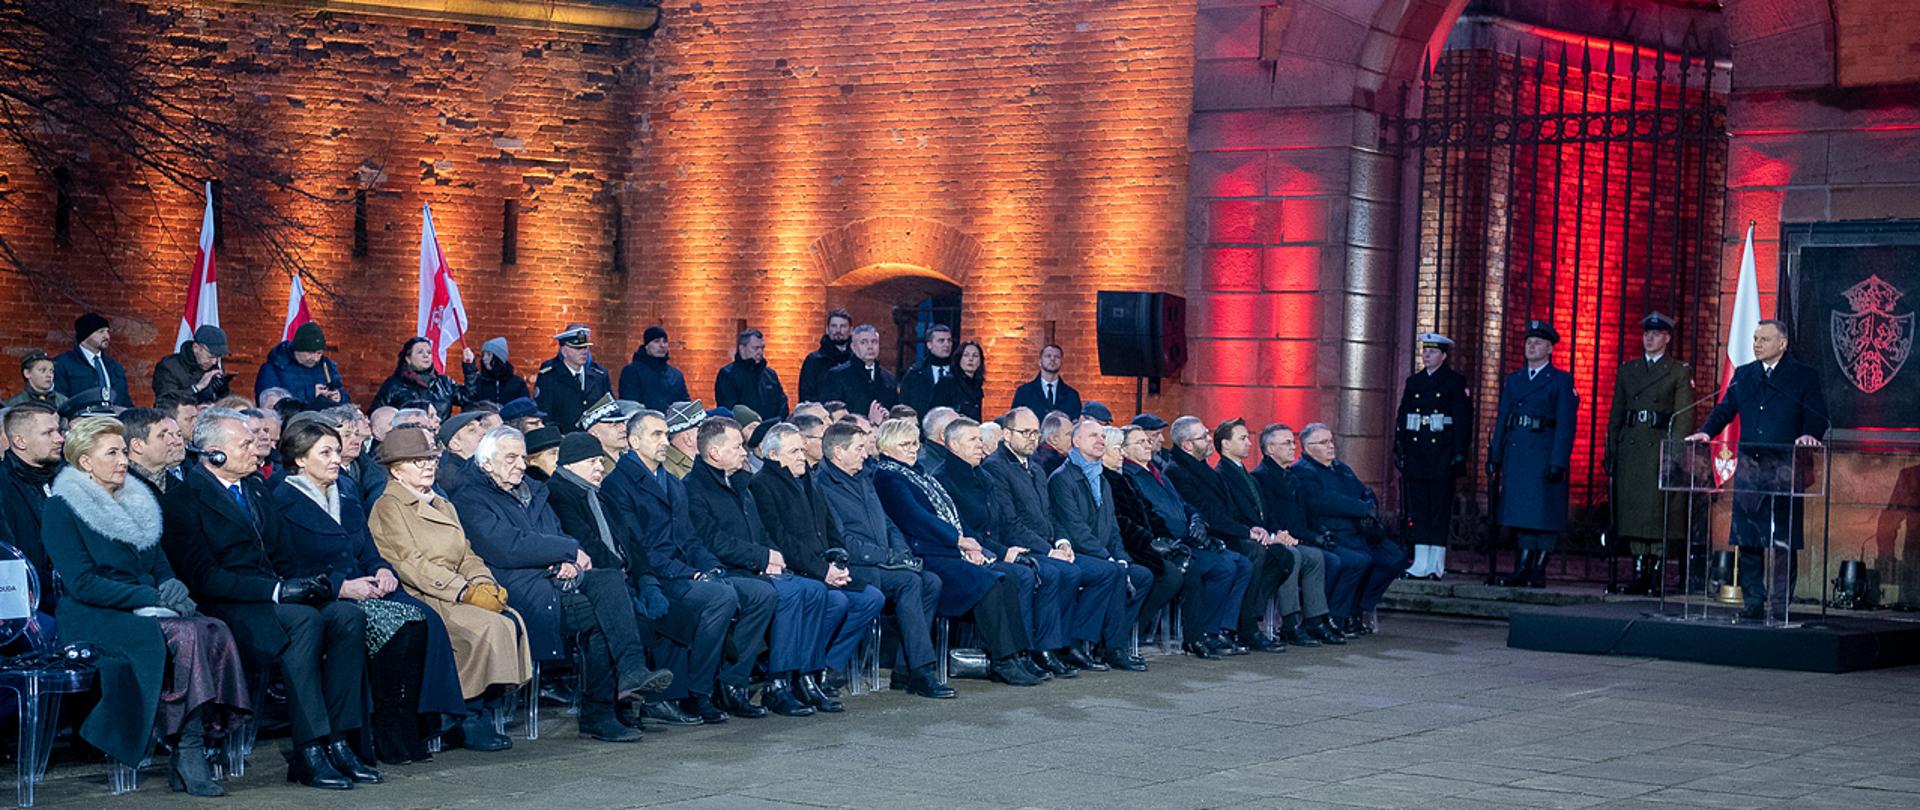 23 stycznia 2023 r., przy Bramie Straceń na Cytadeli Warszawskiej, odbył się uroczysty Apel Pamięci z okazji 160. rocznicy wybuchu Powstania Styczniowego z udziałem prezydentów Polski i Litwy oraz wicepremiera - ministra obrony narodowej Mariusza Błaszczaka.